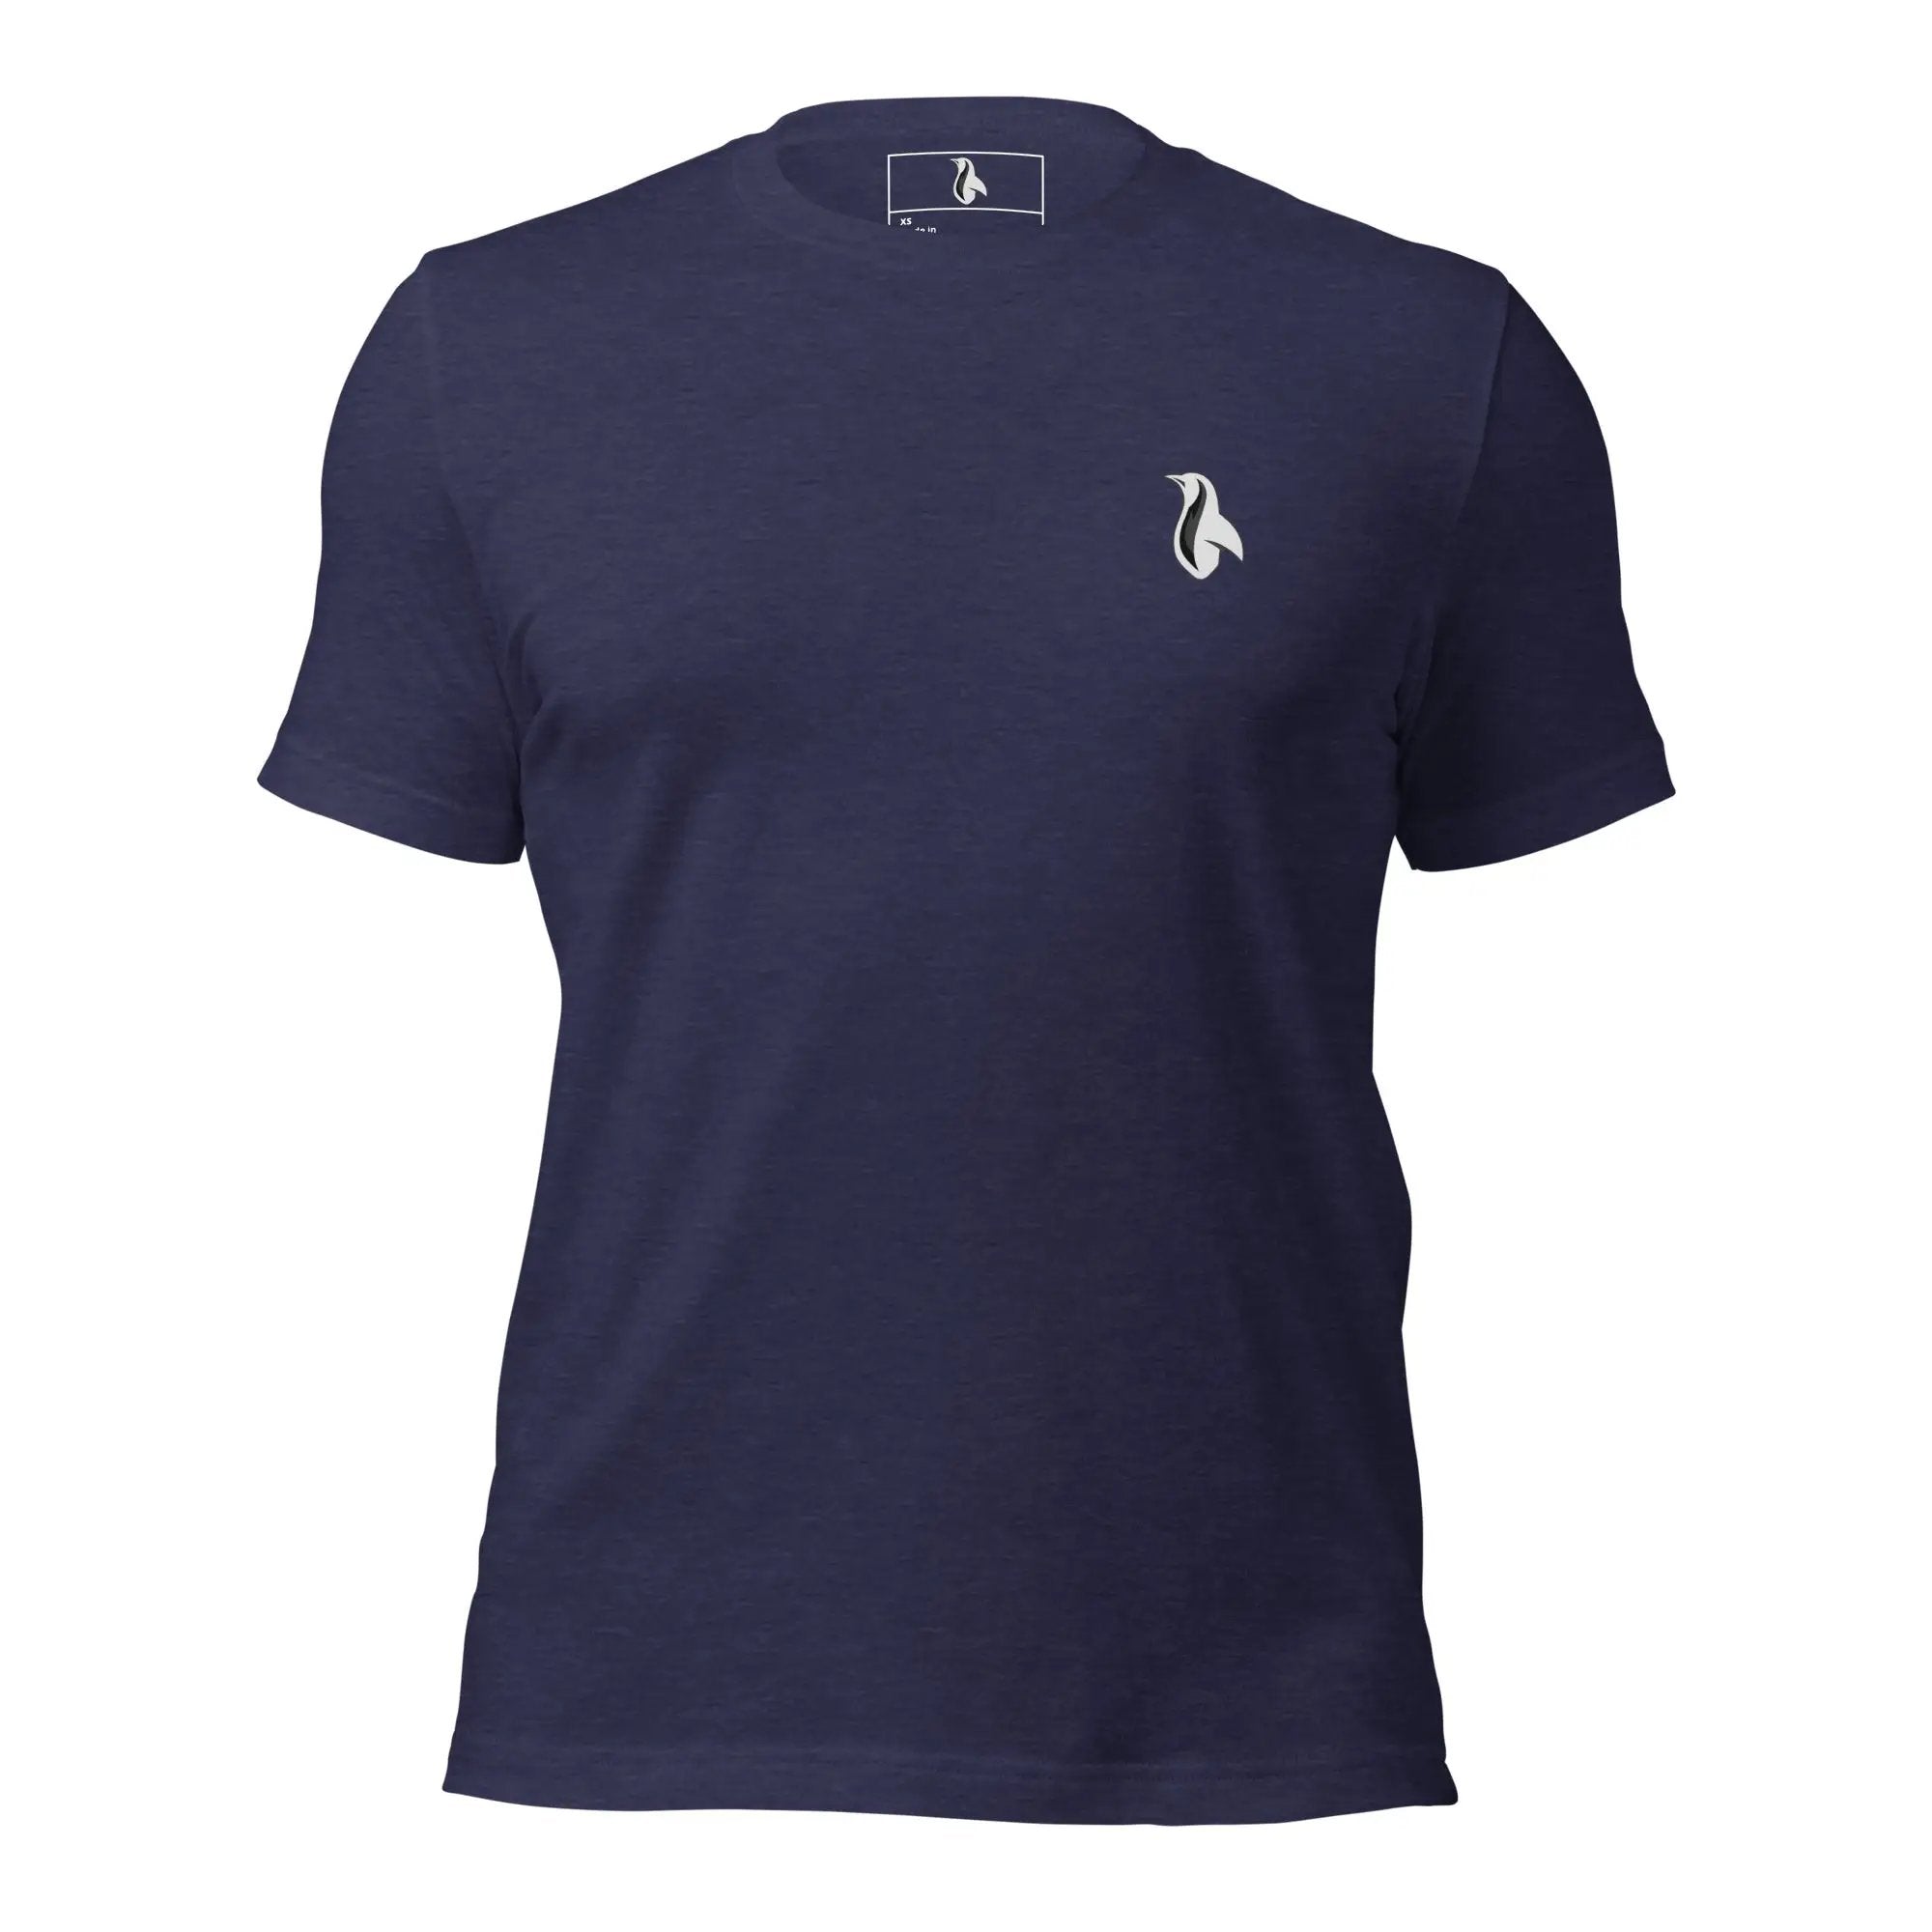 Maul Unisex t-shirt (Back)